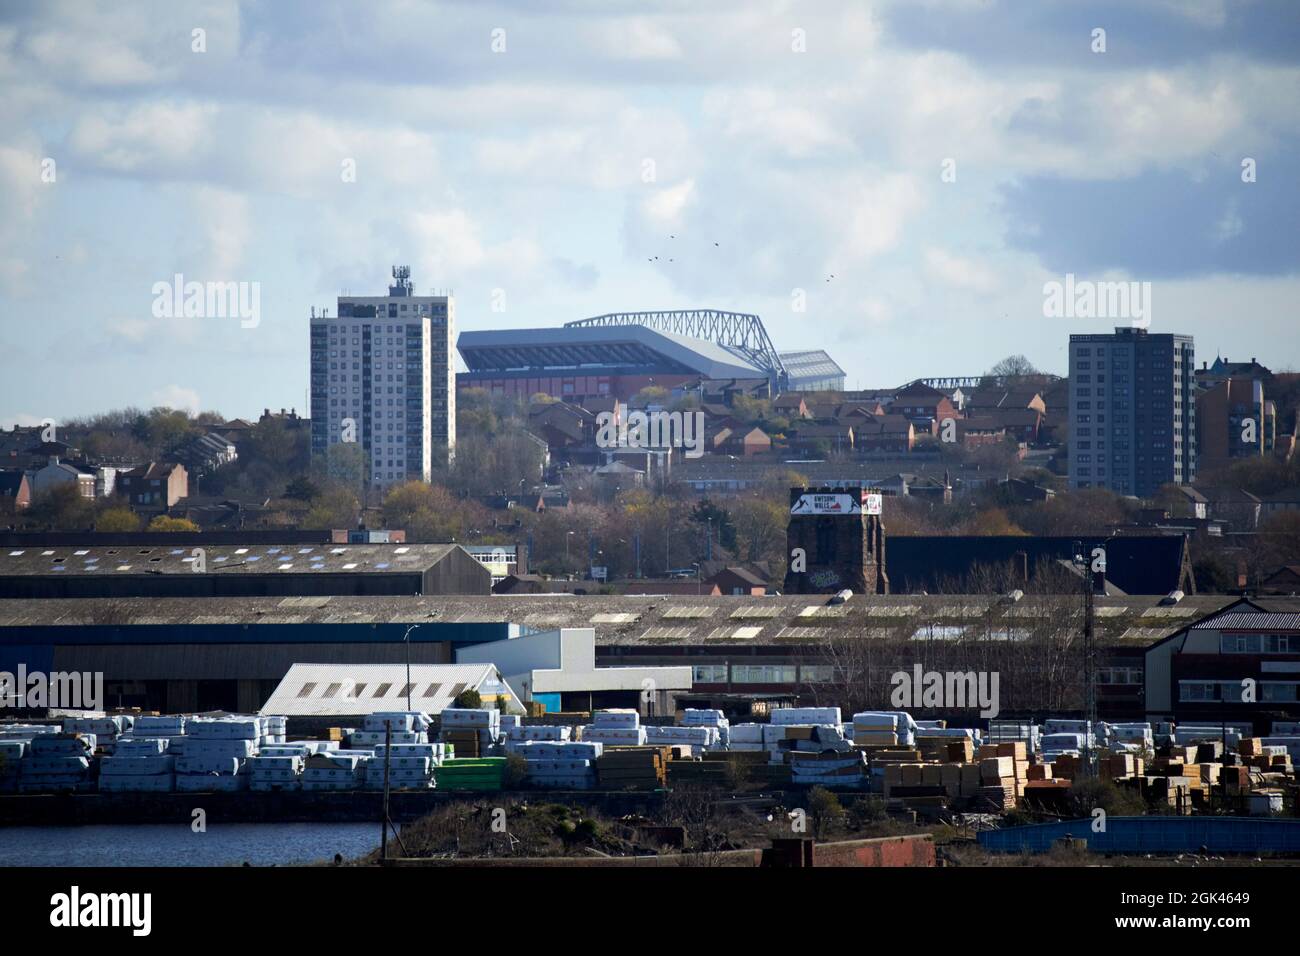 vue sur le stade anfield liverpool fc skyline depuis la zone autour du nouveau stade everton dans les docklands liverpool angleterre Banque D'Images